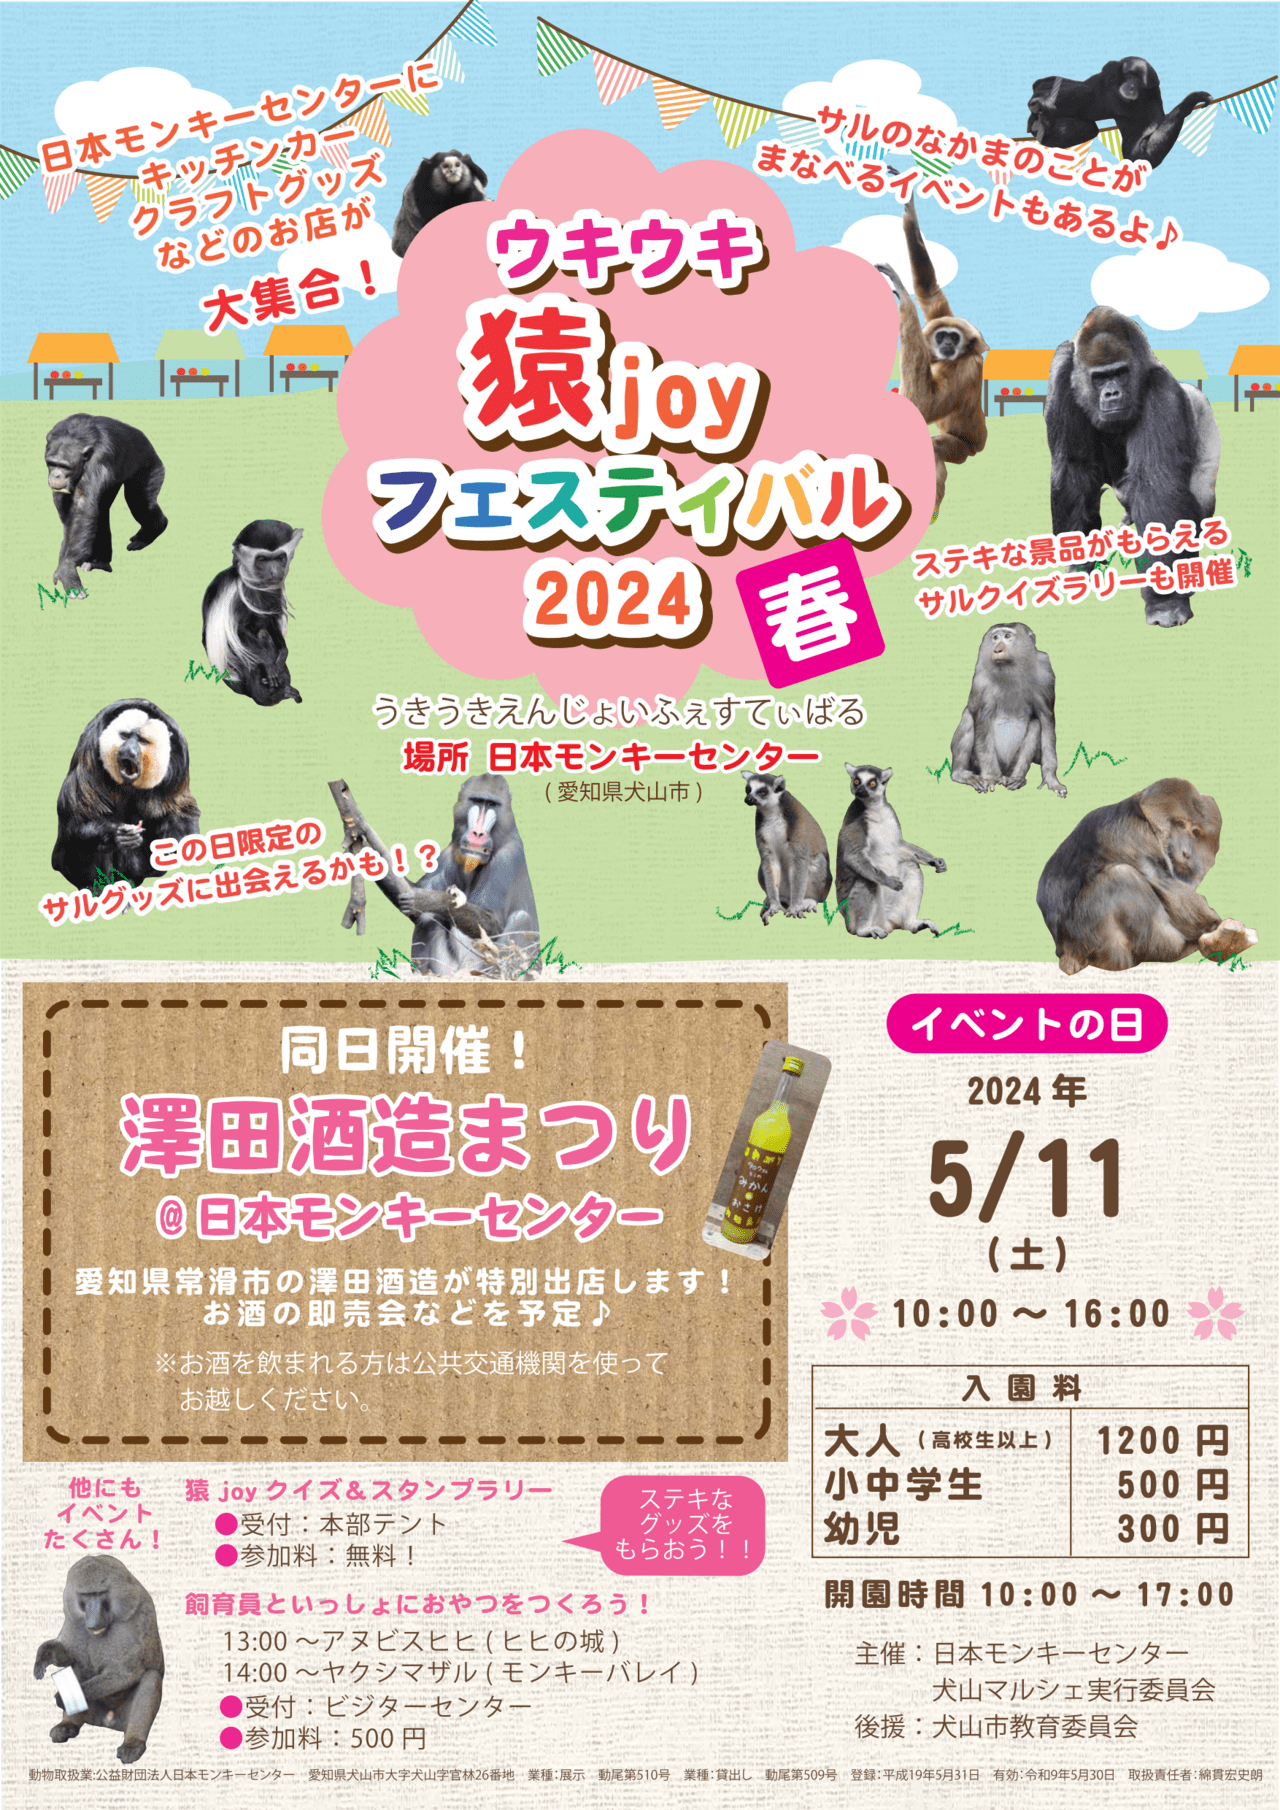 ウキウキ猿joyフェスティバル2024春